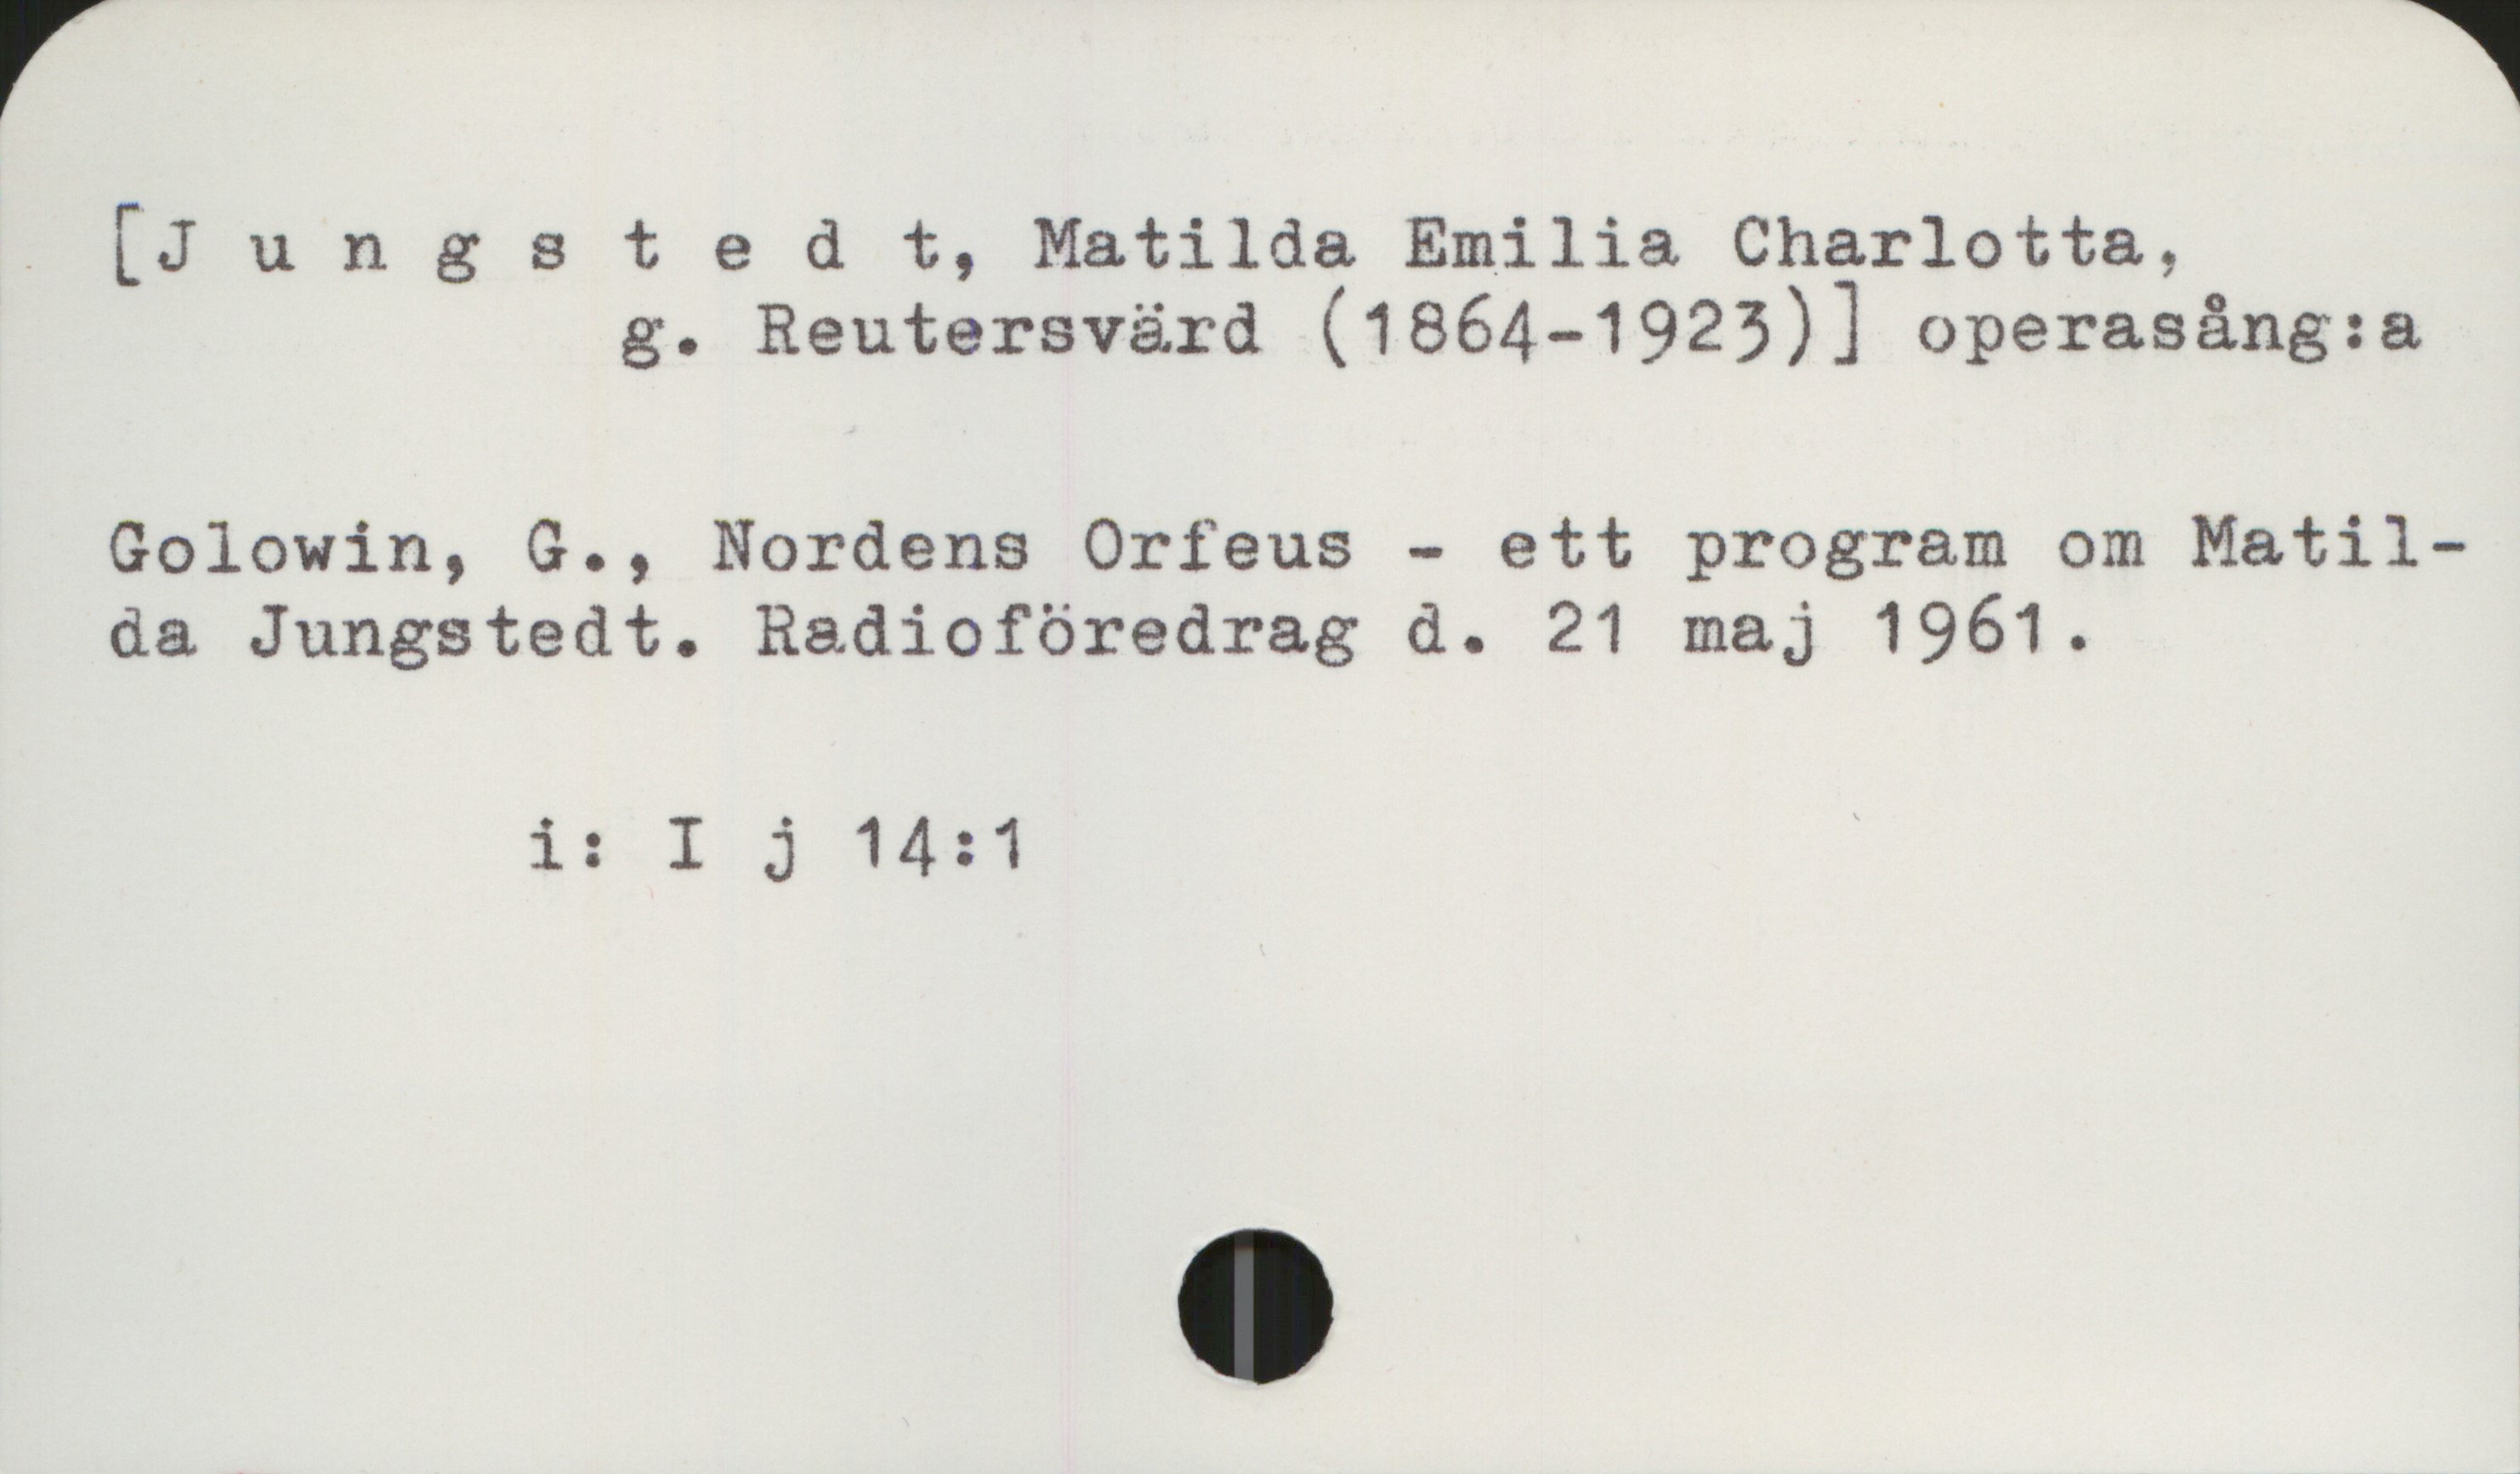 Jungstedt, Matilda (1864-1923) [Jungstedt, Matilda Emilia Charlotta,
           g. Reutersvärd (1864-1923) operasång:a]

Golowin, G., Nordens Orfeus - ett program om Matilda Jungstedt. Radioföredrag d. 21 maj 1961

          i: I j 14:1